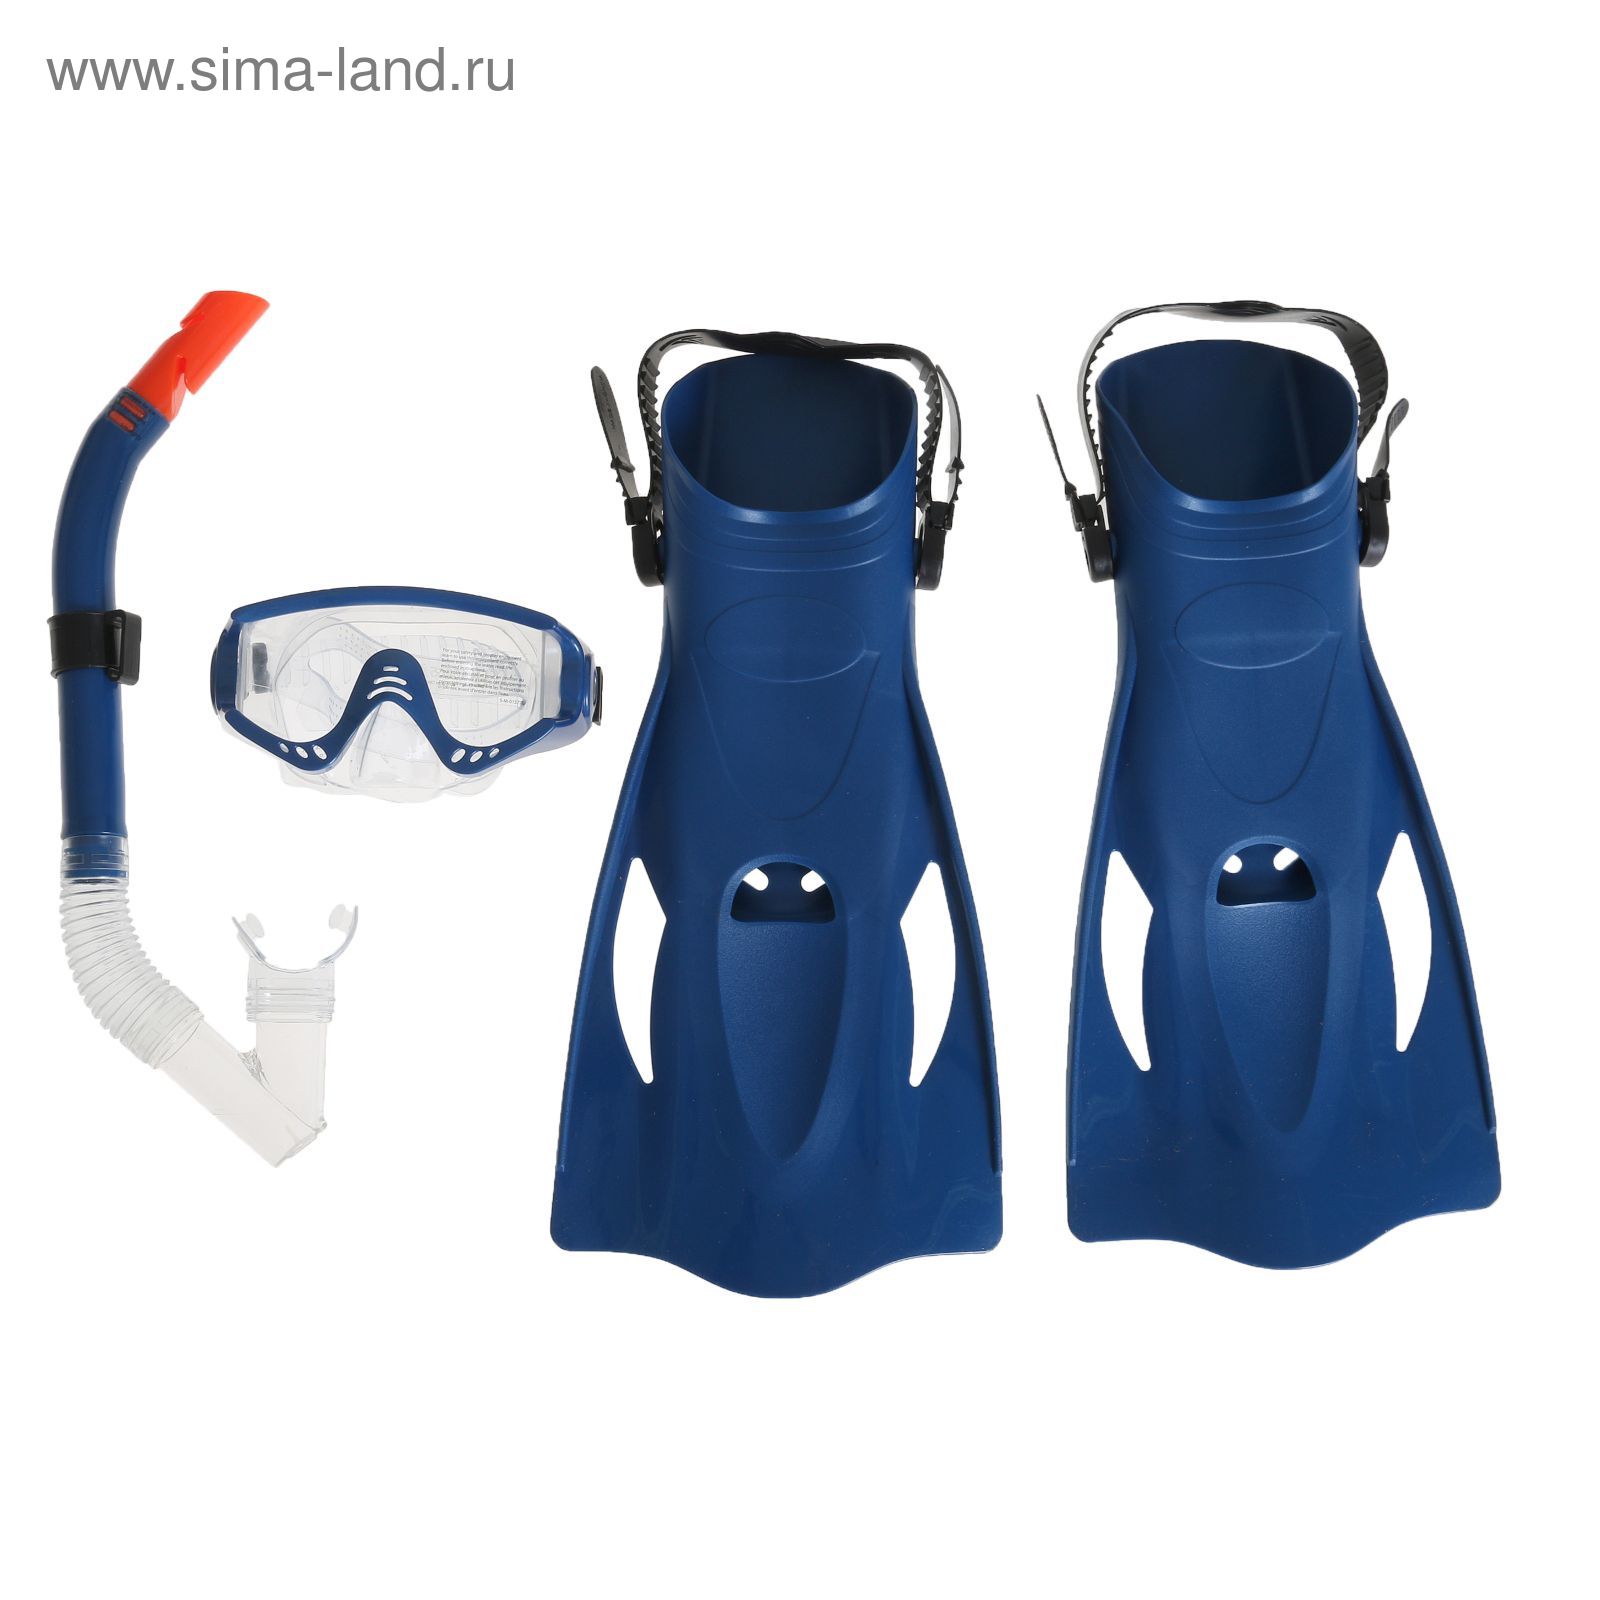 Набор для плавания Meridian, для взрослых, 3 предмета: маска, ласты, трубка, цвет МИКС Bestway